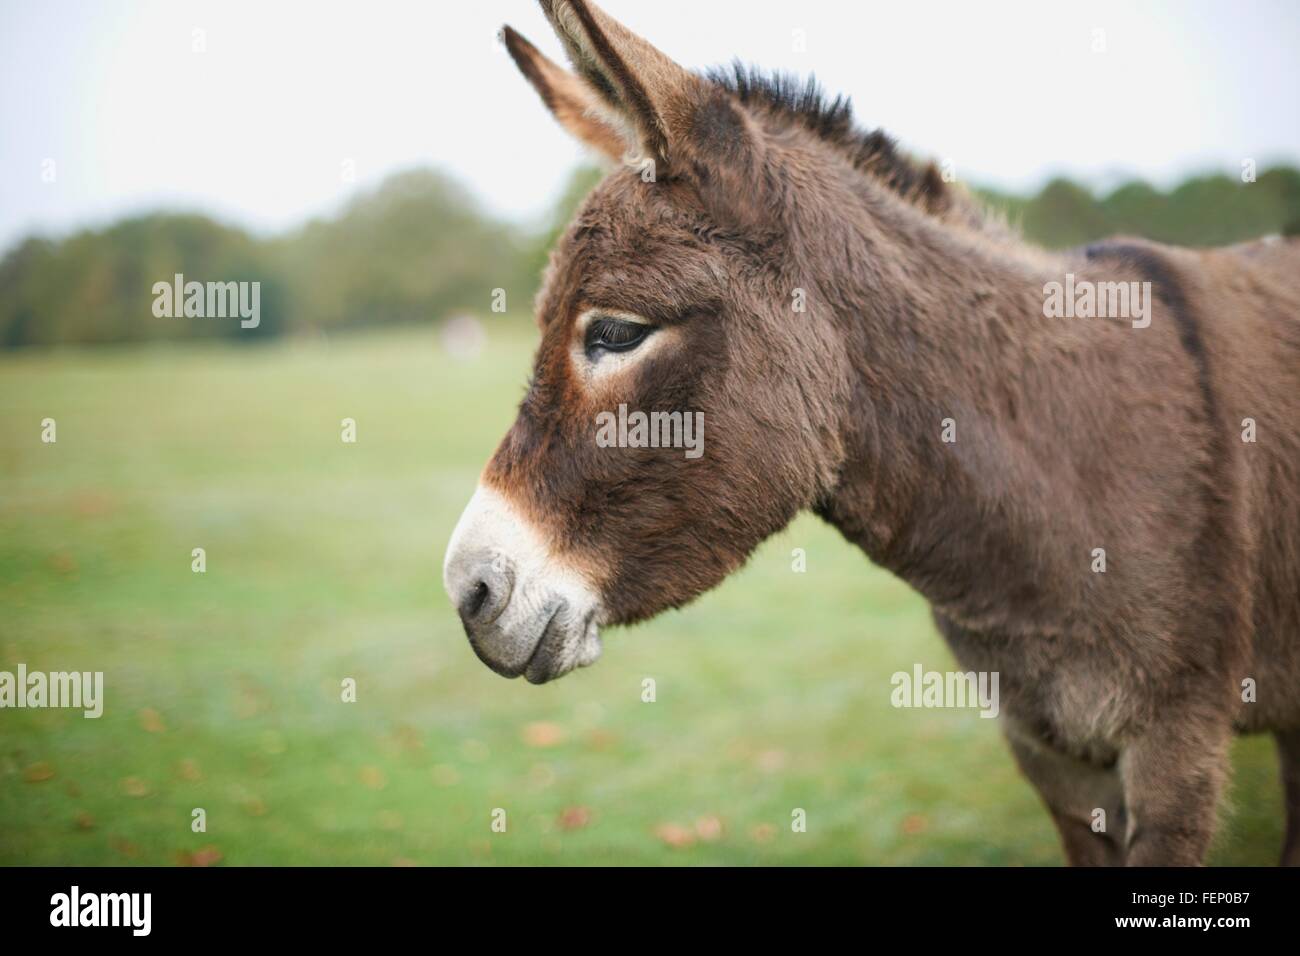 Portrait of cute donkey in field Stock Photo